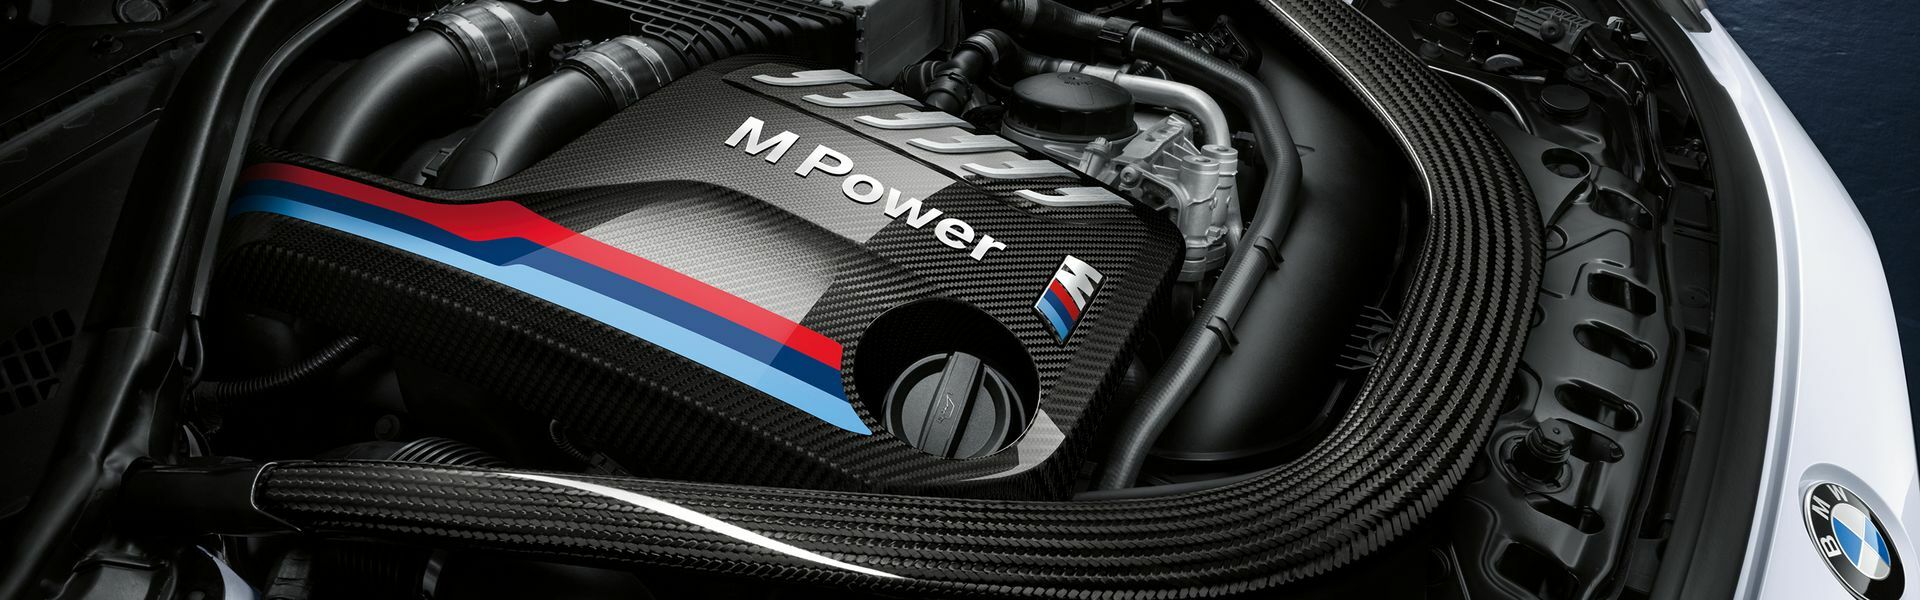 Zvýšení výkonu/ Softwarové úpravy/ Drobné performance díly pro automobil BMW X7 50i